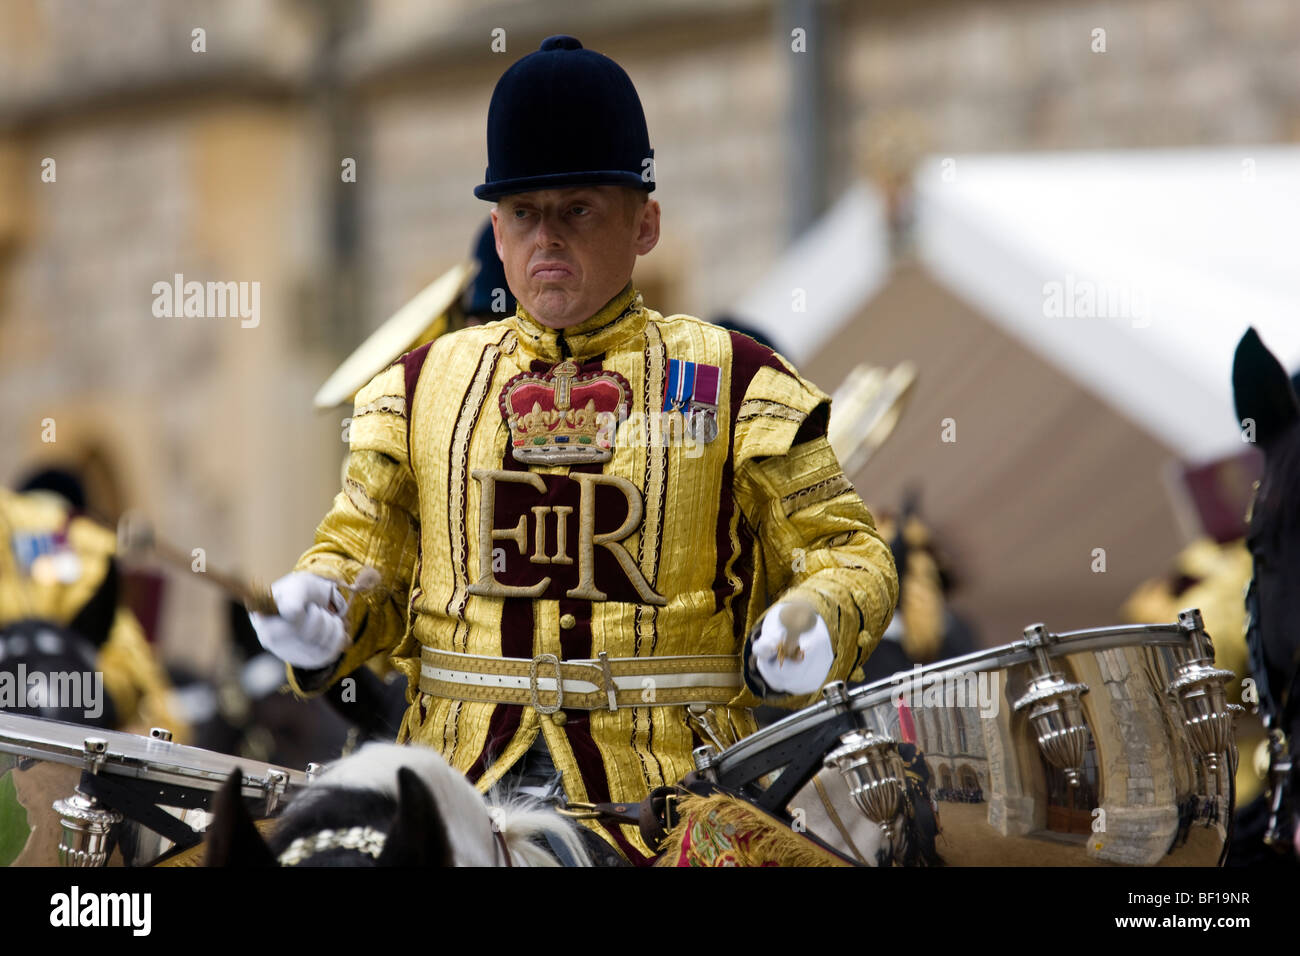 Kessel Trommel Schlagzeuger zeremonielle britische Armee ERII Krone Uniform Haushalt Kavallerie Band montiert Medaillen gold golden Horizo Trommeln Stockfoto